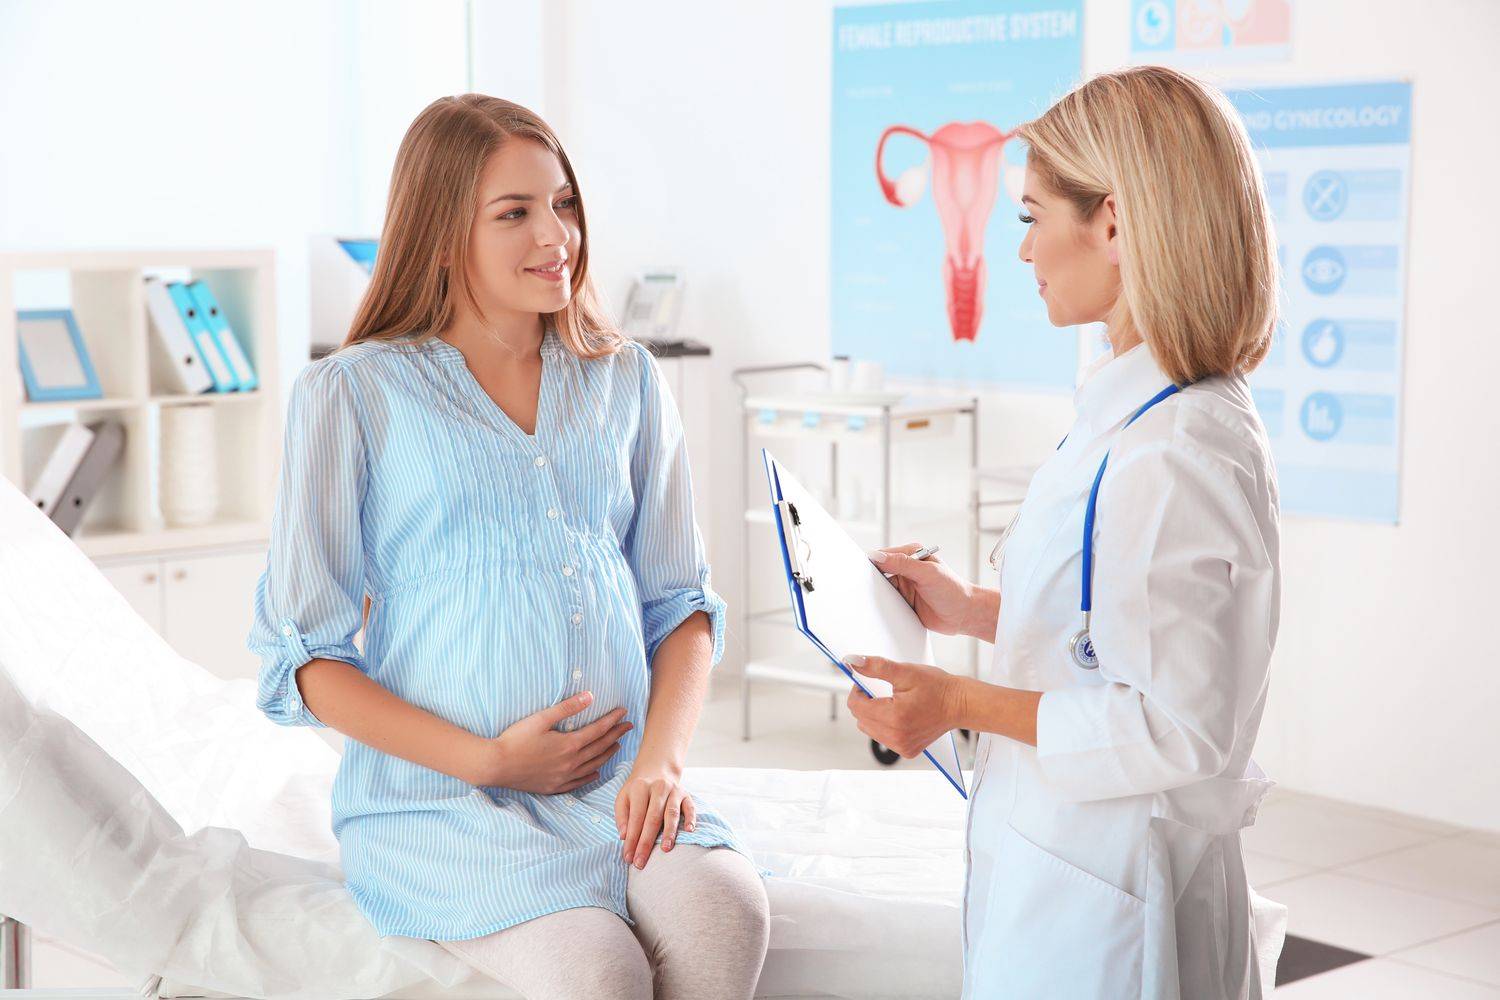 Чудо в животике: когда нужно идти к врачу при беременности в первый раз?